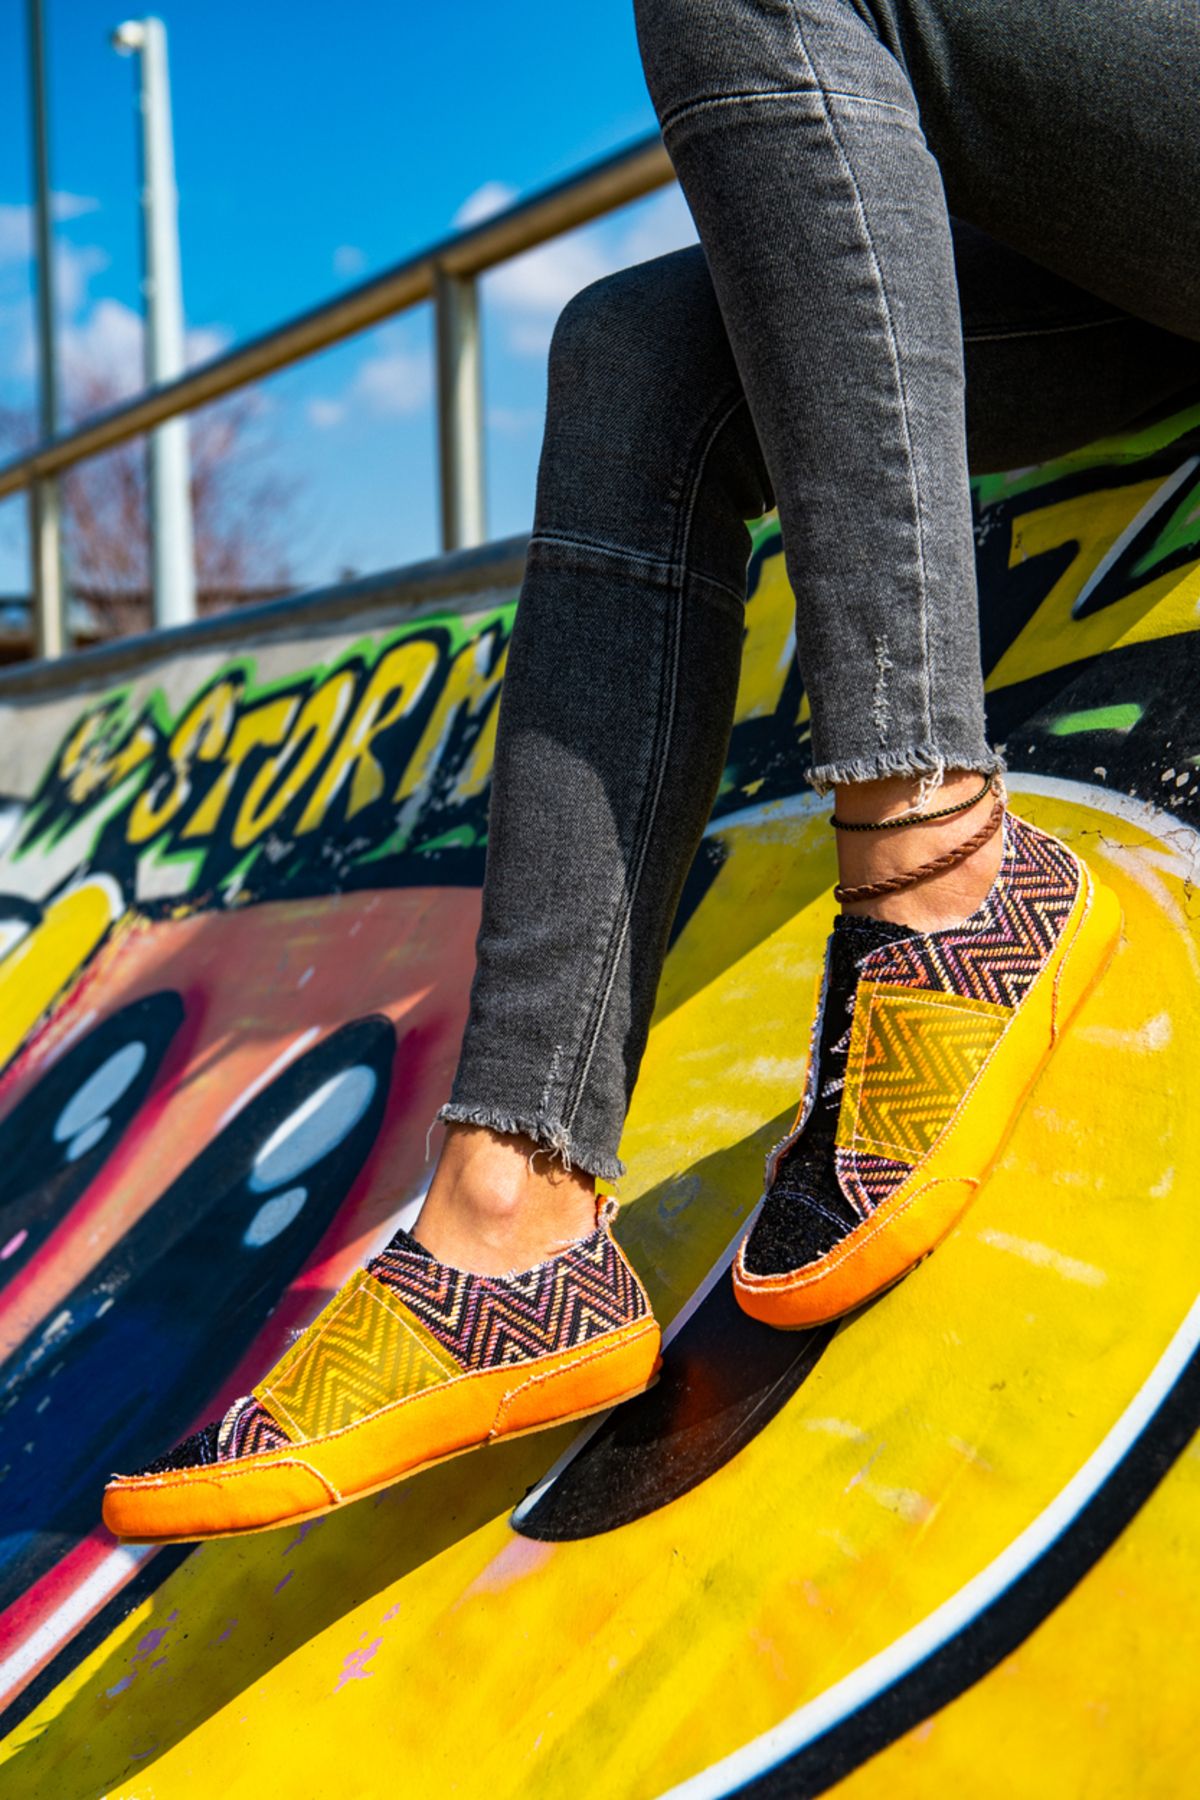 Güneşkızı Girl On Fire Sneaker / Tasarım Baskılı Vegan / Guki35 Sneakers Kadin Ayakkabı